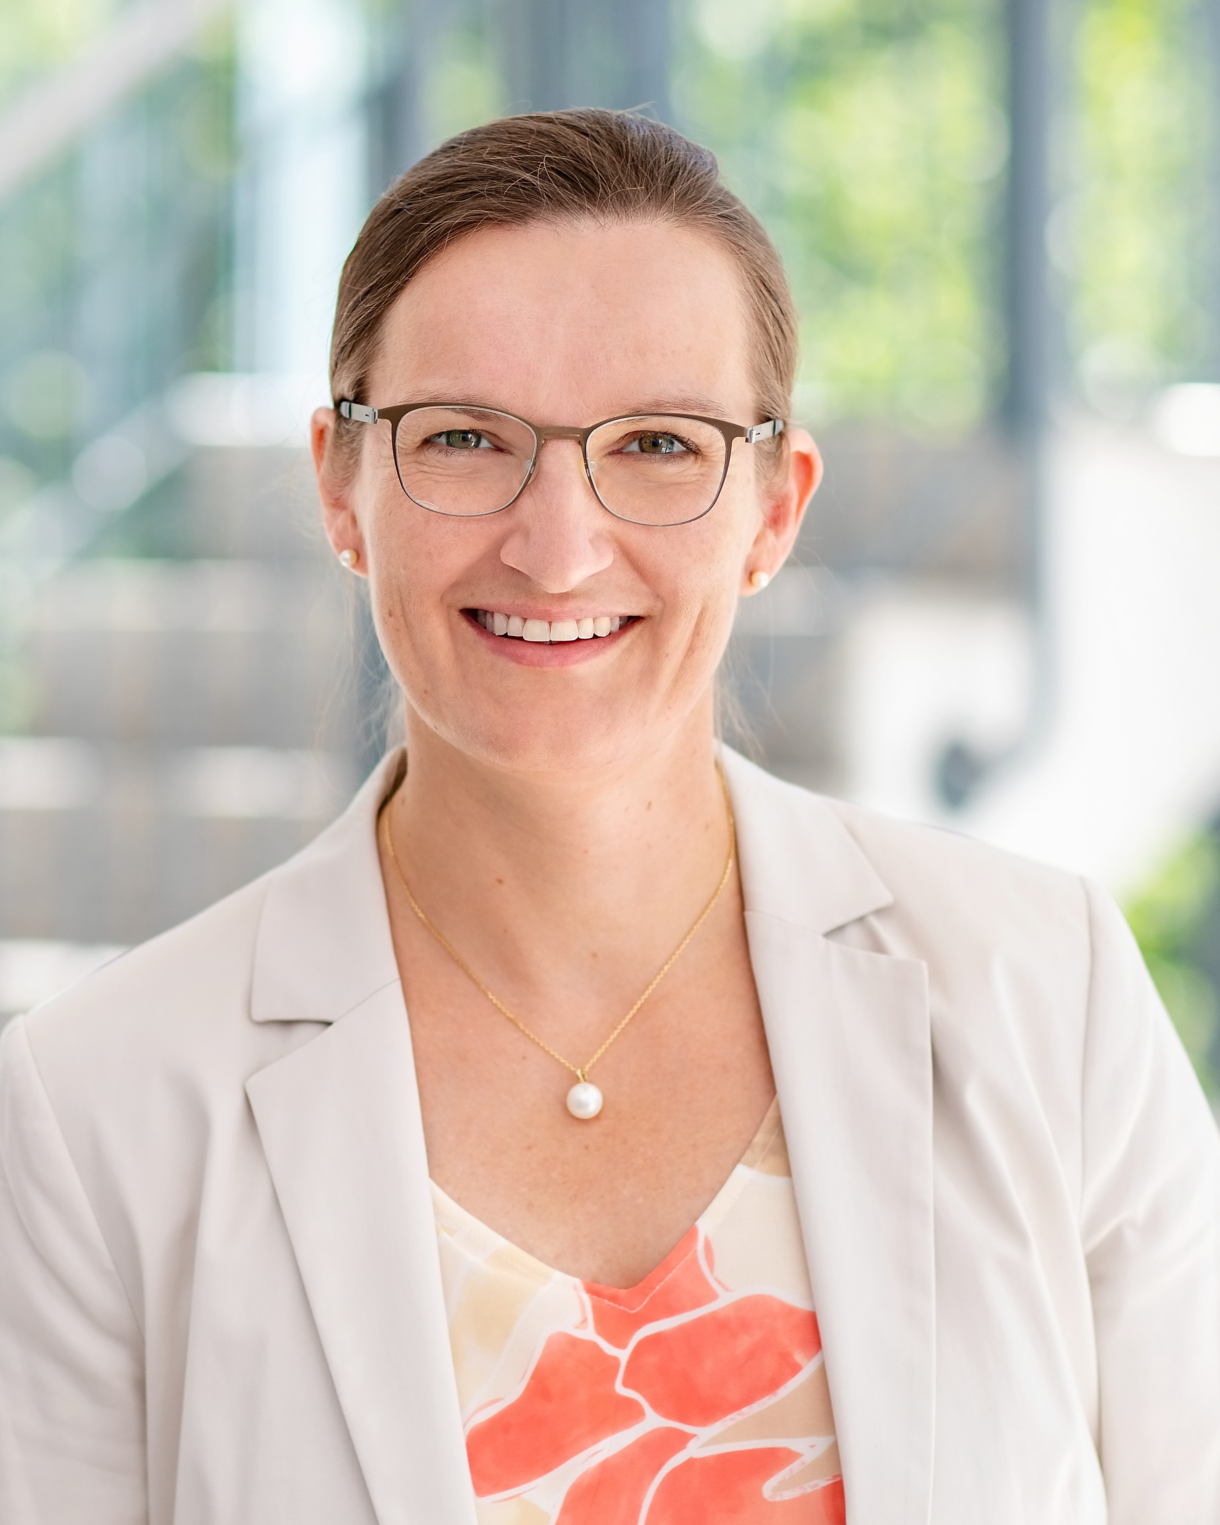 Foto: Dr. Susanne Kuger vom Deutsches Jugendinstitut, Leiterin des Zentrums für Dauerbeobachtung und Methoden, trägt eine ornage-gelb-beige gemusterte Bluse und einen beigen Blazer. Sie ist Brillenträgerin mit brünetten Haaren.